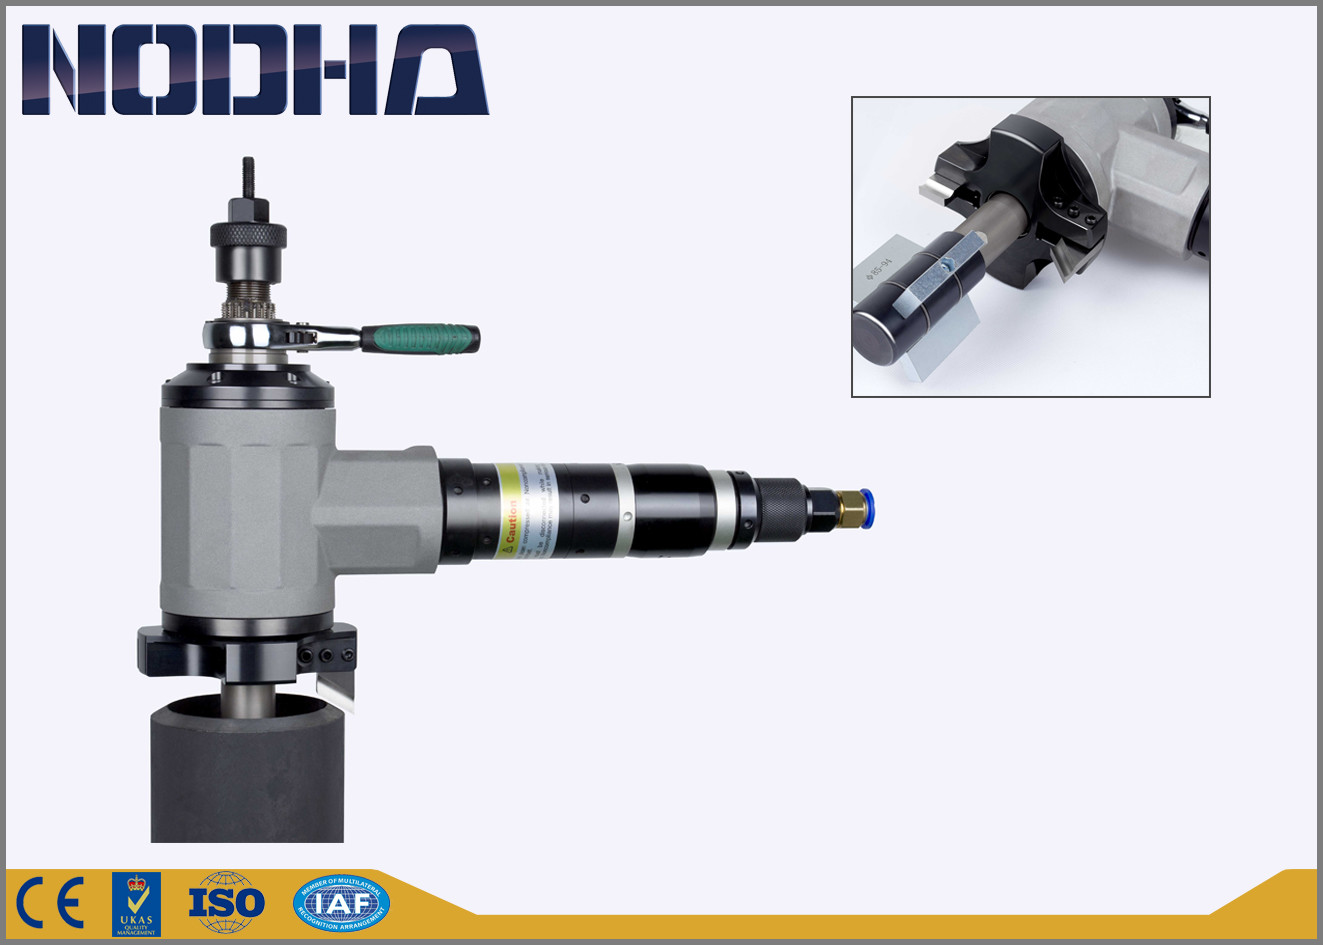 Gamma claming di smussatura 40-112mm di messa a punto facile della macchina del tubo pneumatico montata diametro interno